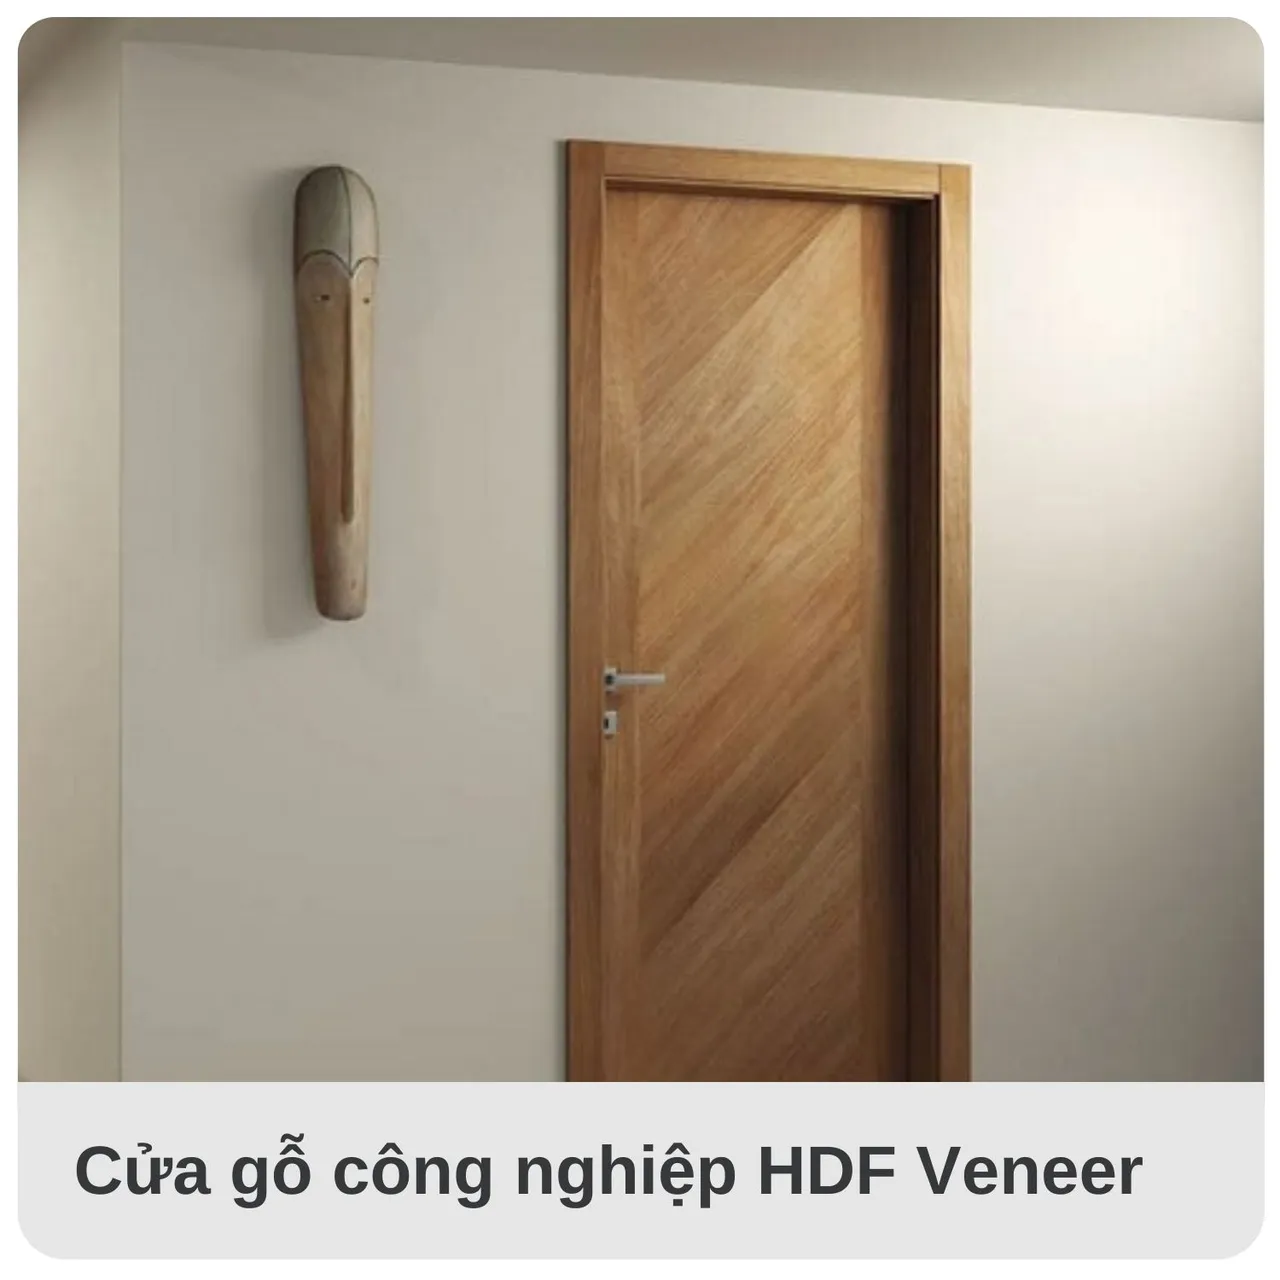 Cửa gỗ công nghiệp HDF Veneer màu sắc hiện đại sang trọng